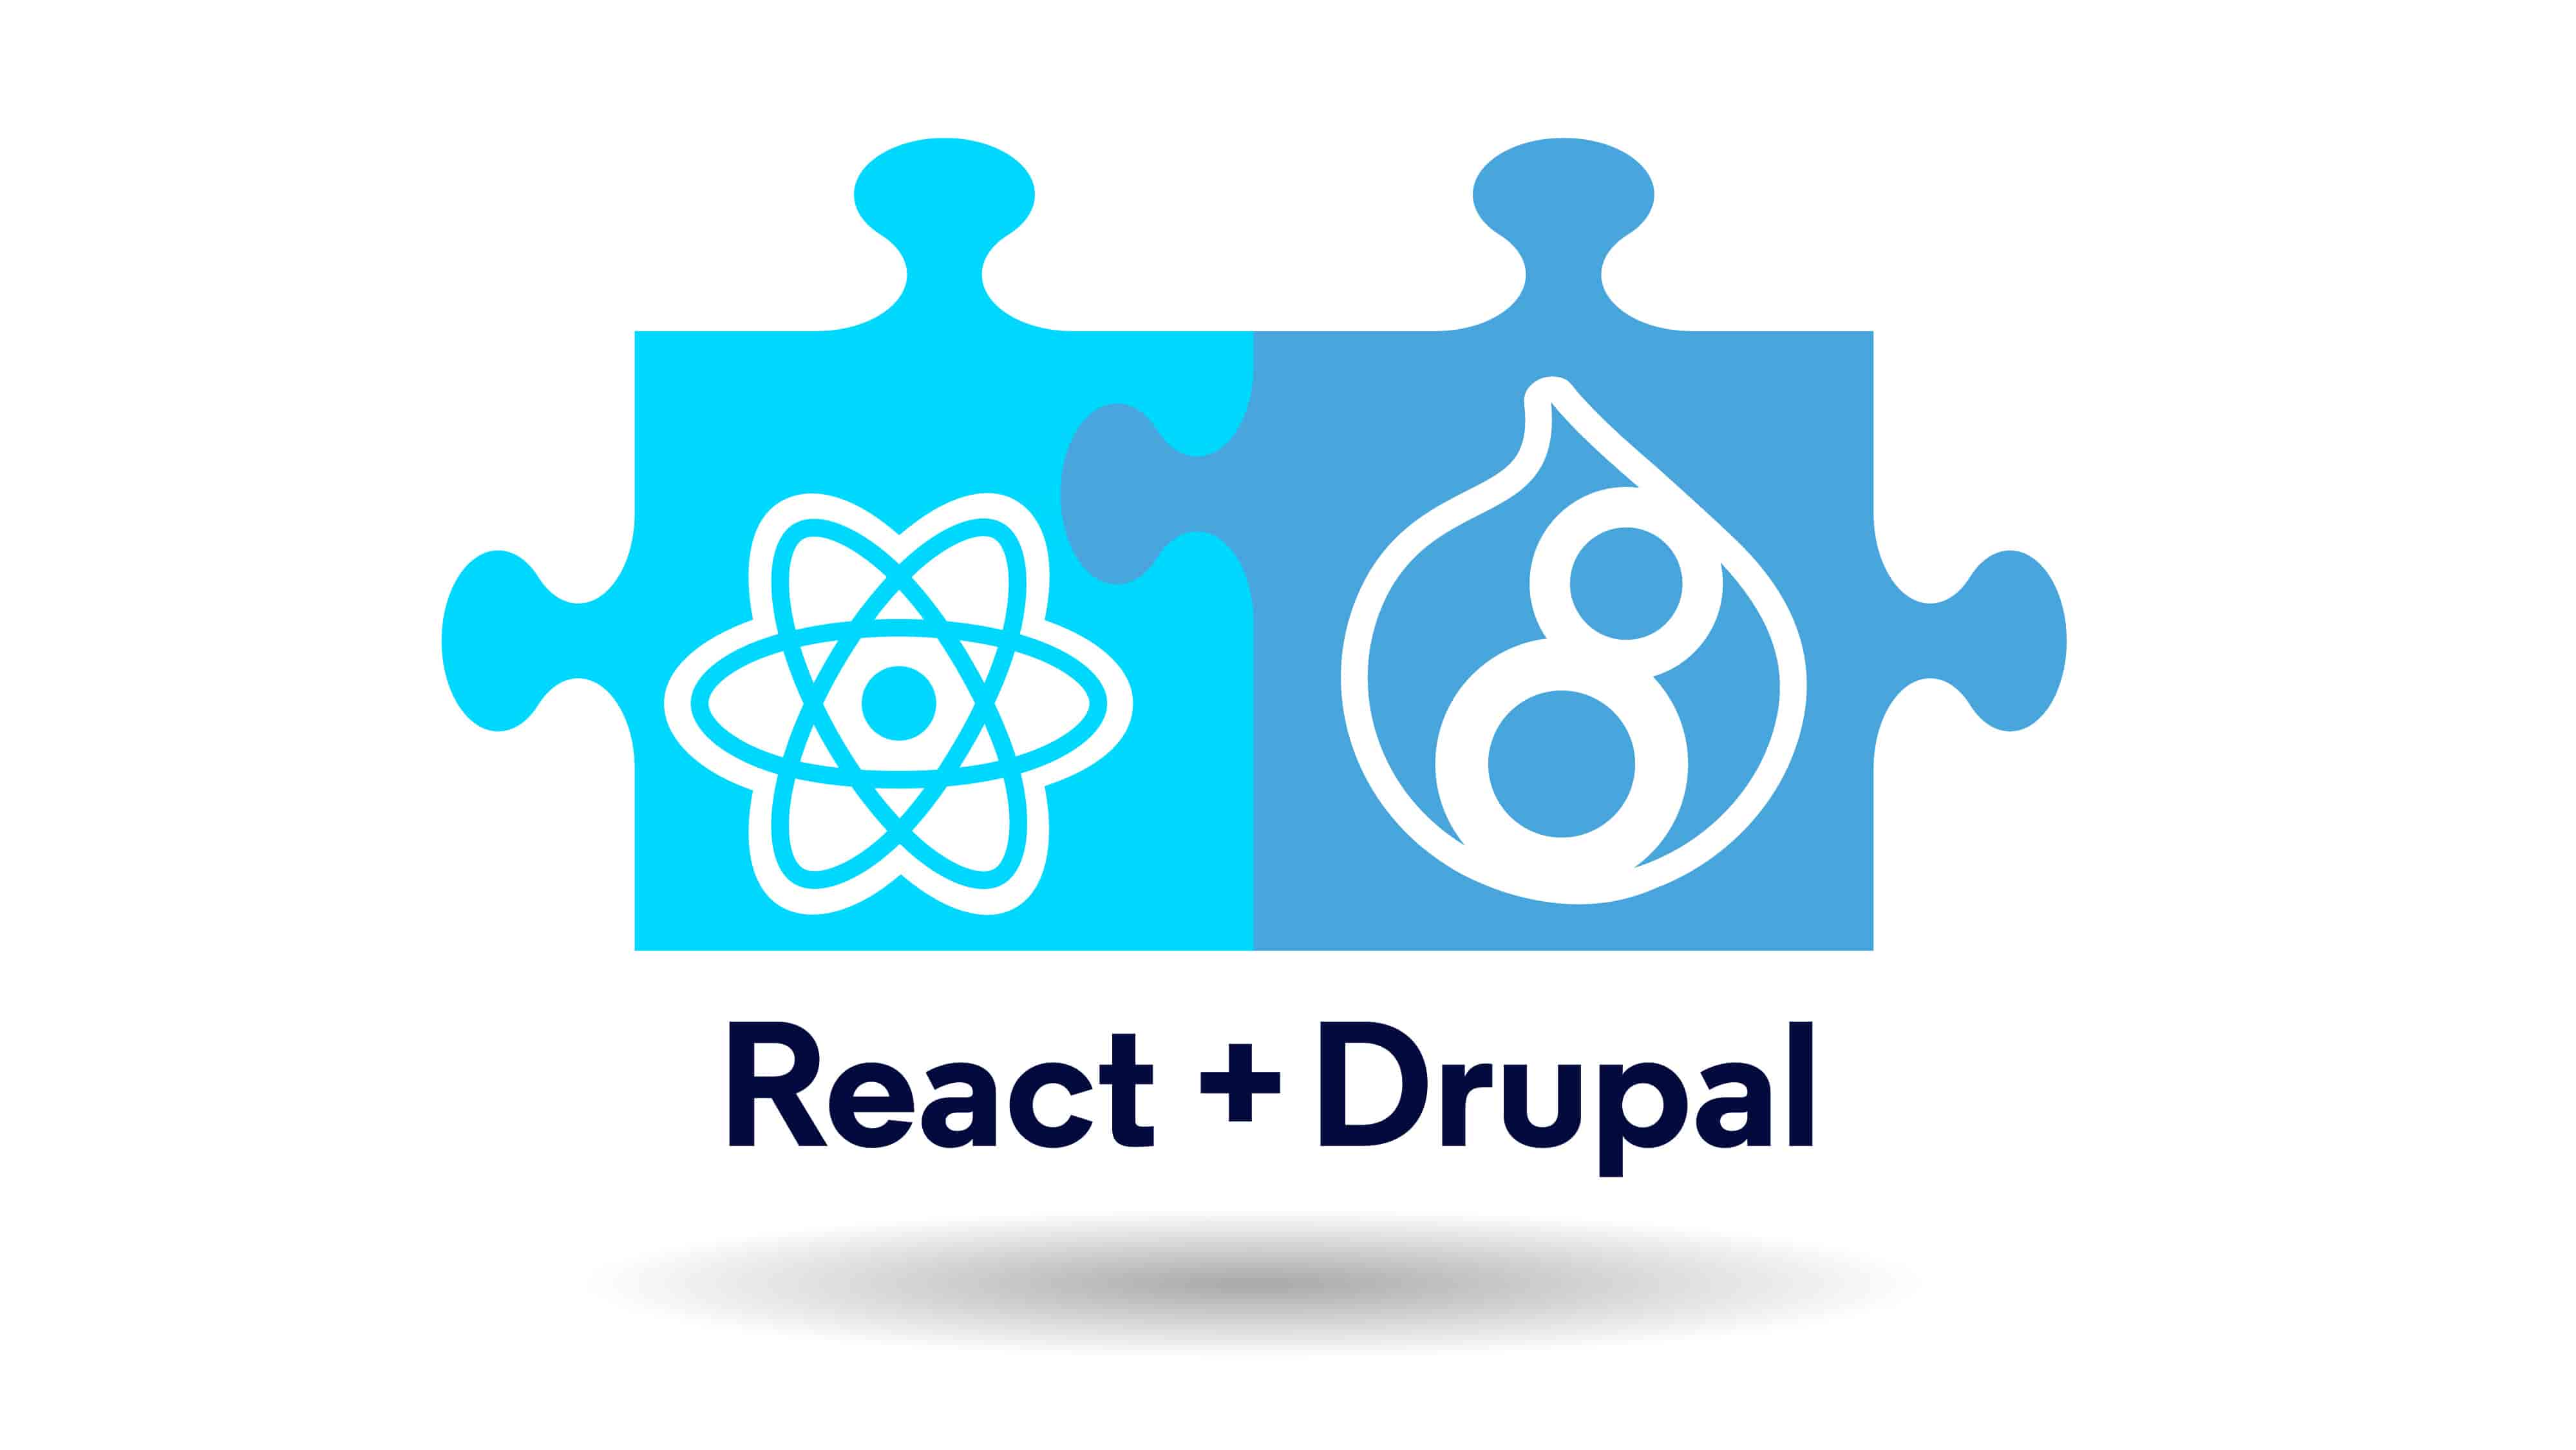 Drupal React decoupling